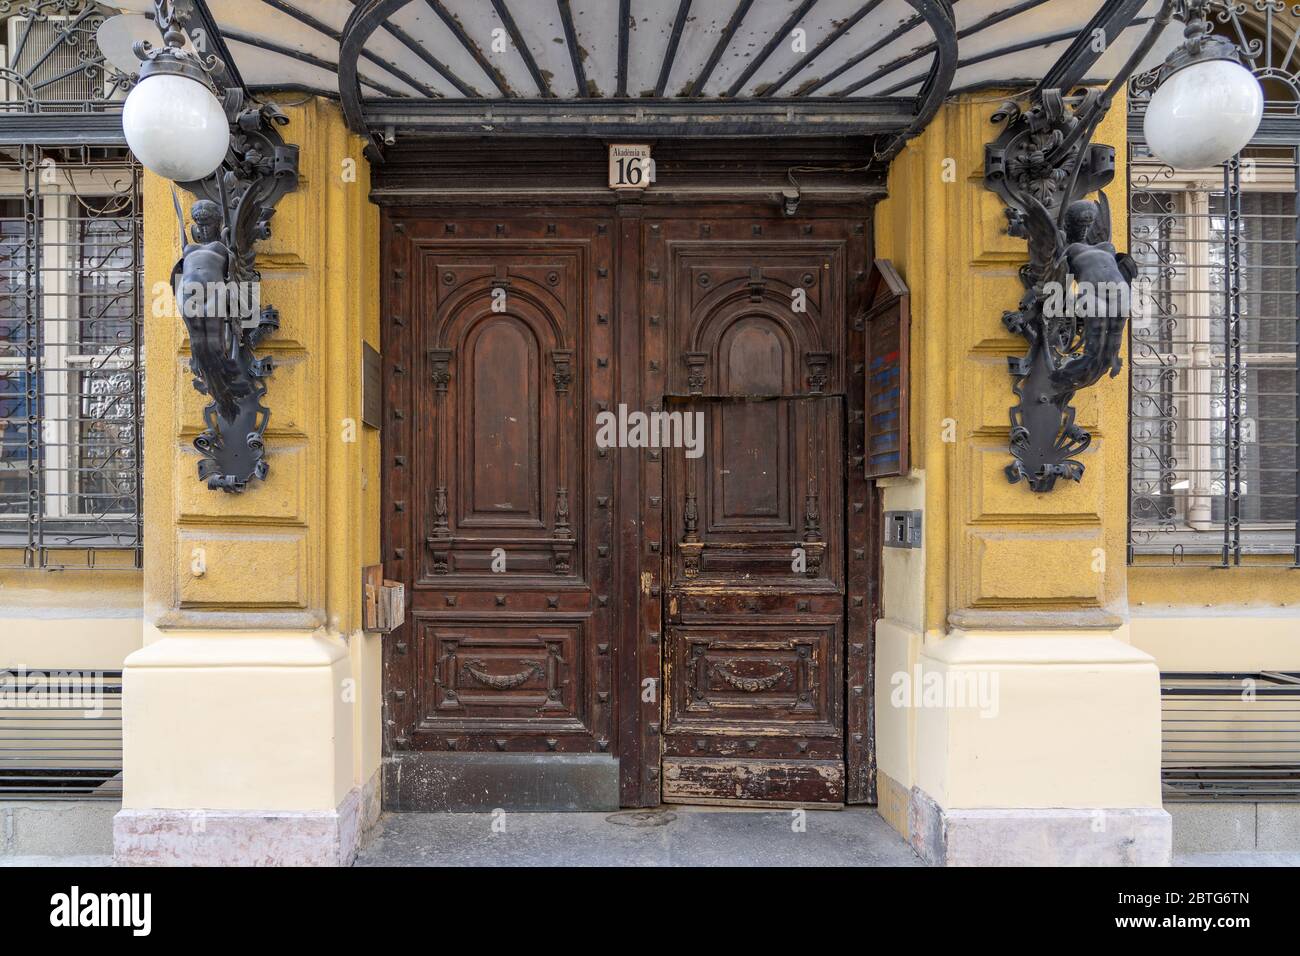 8. Feb 2020 - Budapest, Ungarn: Holztor Eingang des Diescher Hauses mit dekorativen Telleremblitzen Stockfoto